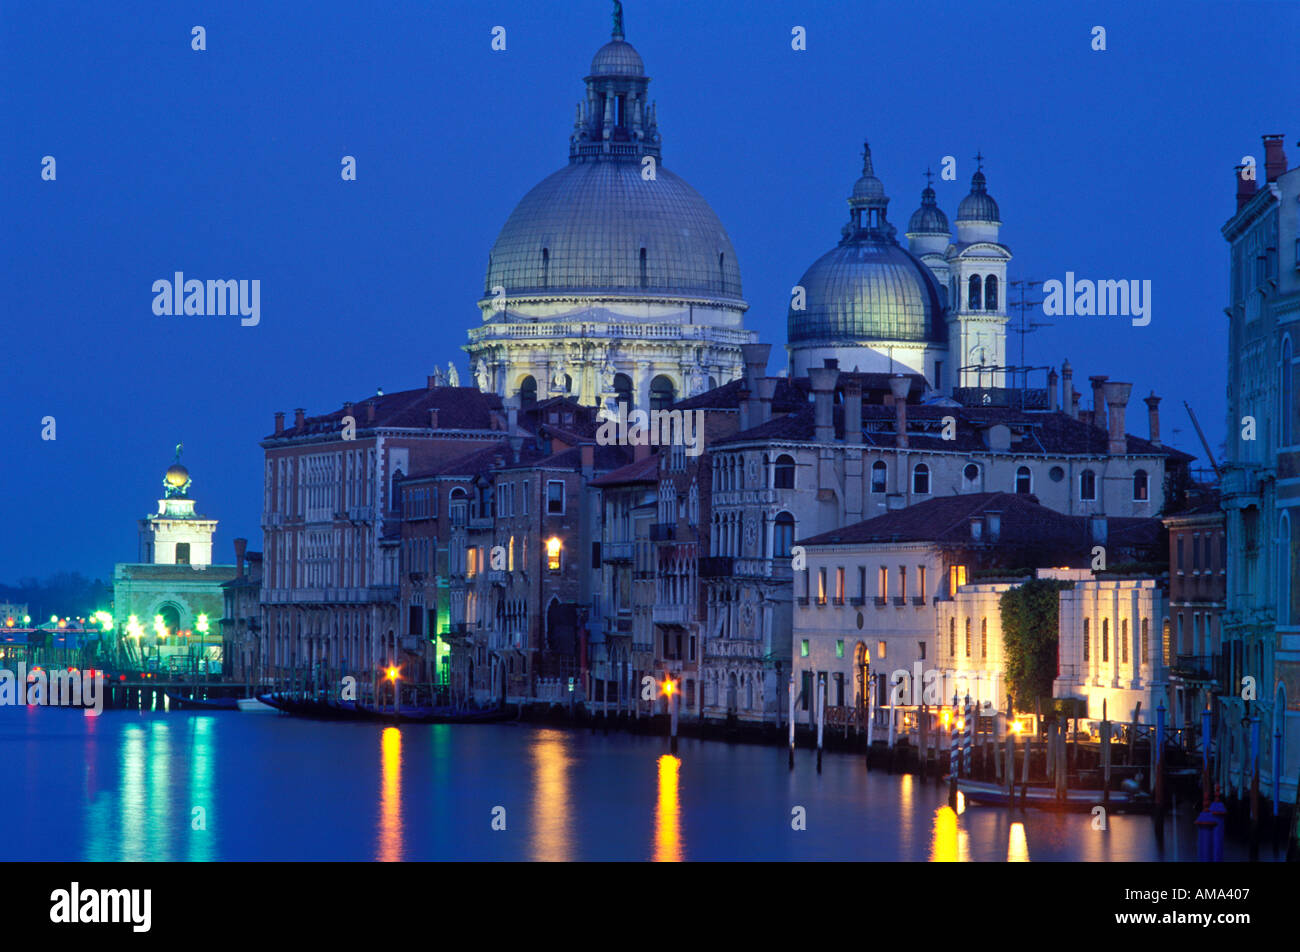 Italie Venise Le Grand Canal avec Santa Maria della Salute est éclairée la nuit Banque D'Images